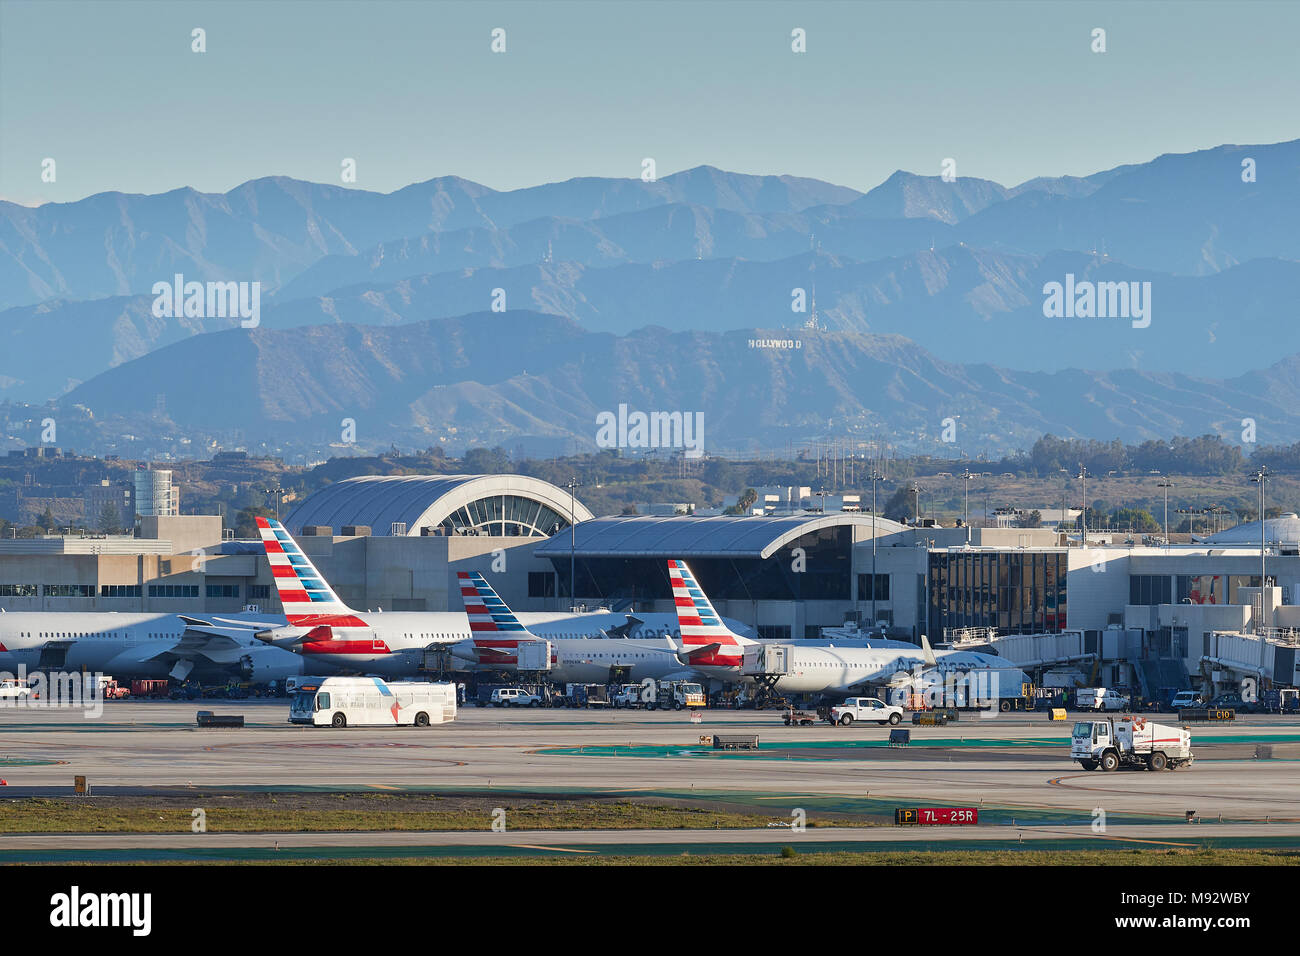 Geparkt American Airlines Passenger Jets in den frühen Morgenstunden am Los Angeles International Airport LAX. Das Hollywood Zeichen und die Berge dahinter. Stockfoto